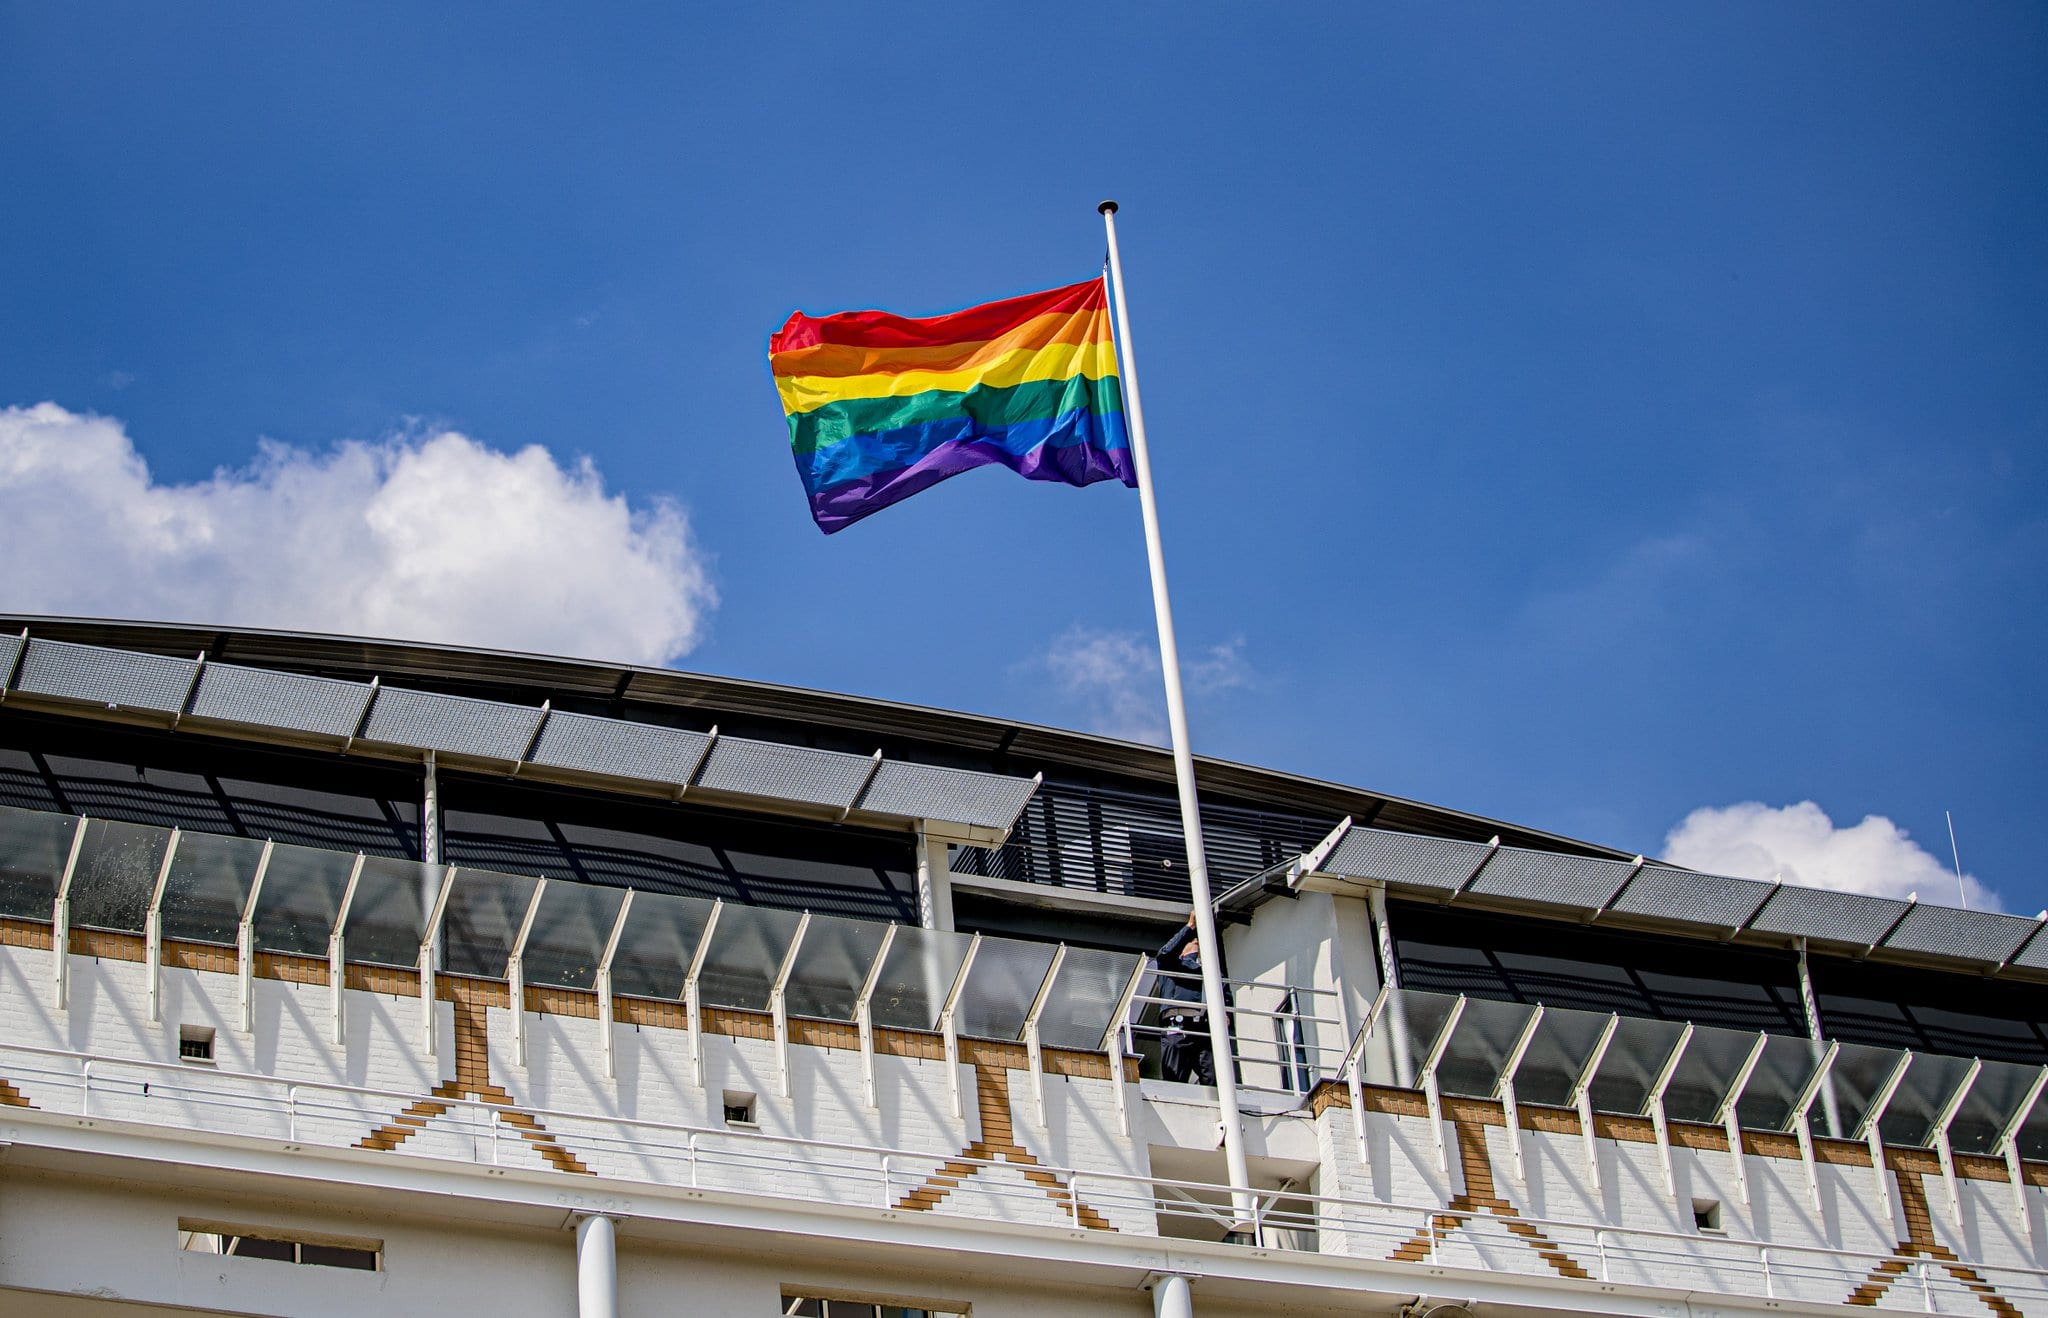 Regenboogvlaggen hangen uit als reactie op geweld tegen lhbti+-gemeenschap